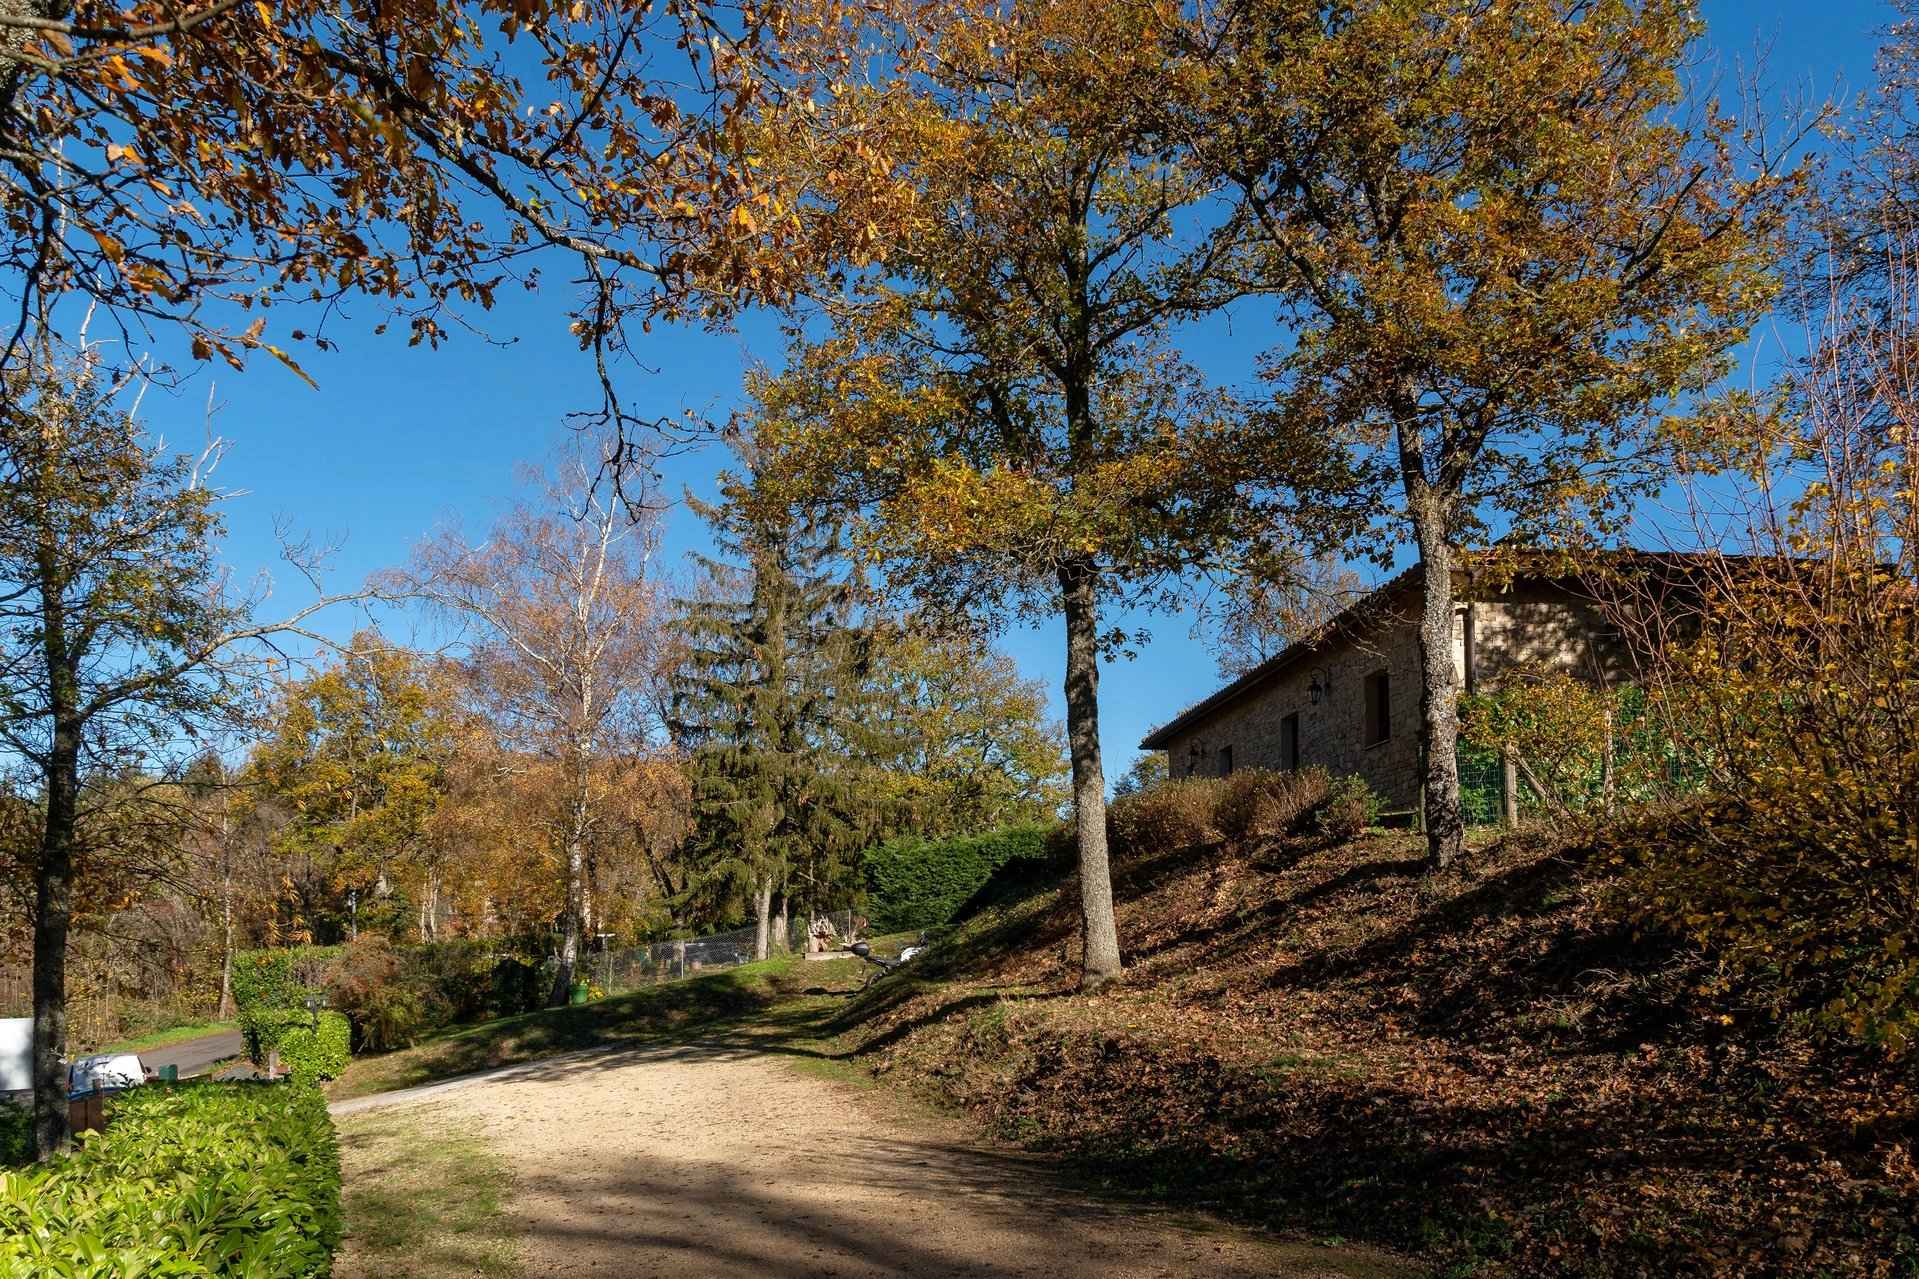 Terrain - Demeure en pierres dans les Monts du Lyonnais- Barnes Lyon, agence immobilière de prestige